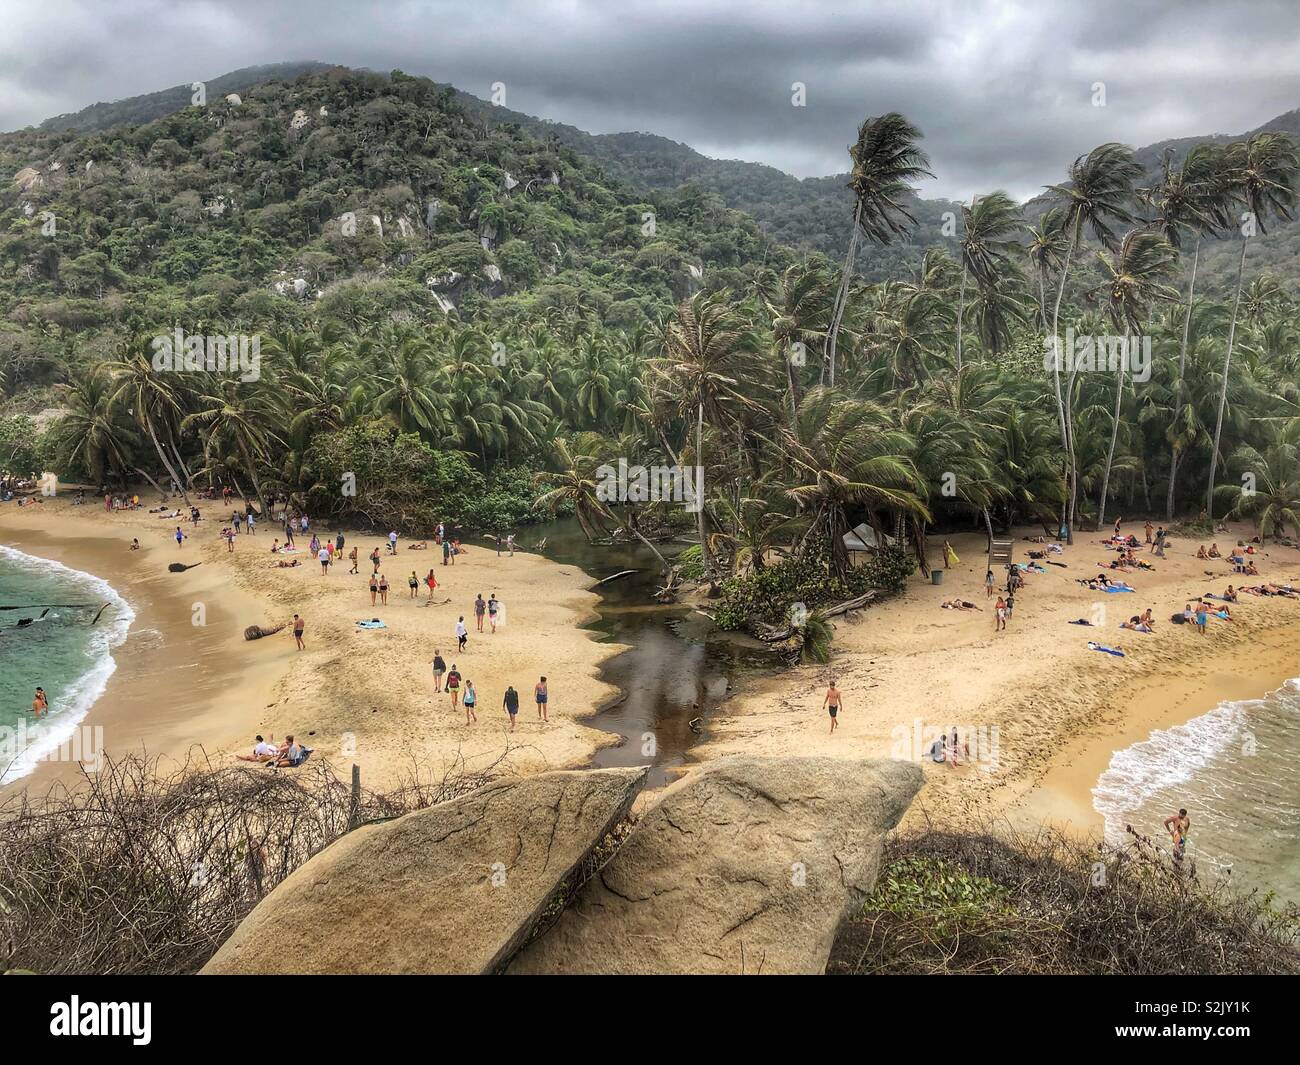 Une montagne, jungle et plage vue dans le Parc National Tayrona à Santa Marta, Colombie. Banque D'Images